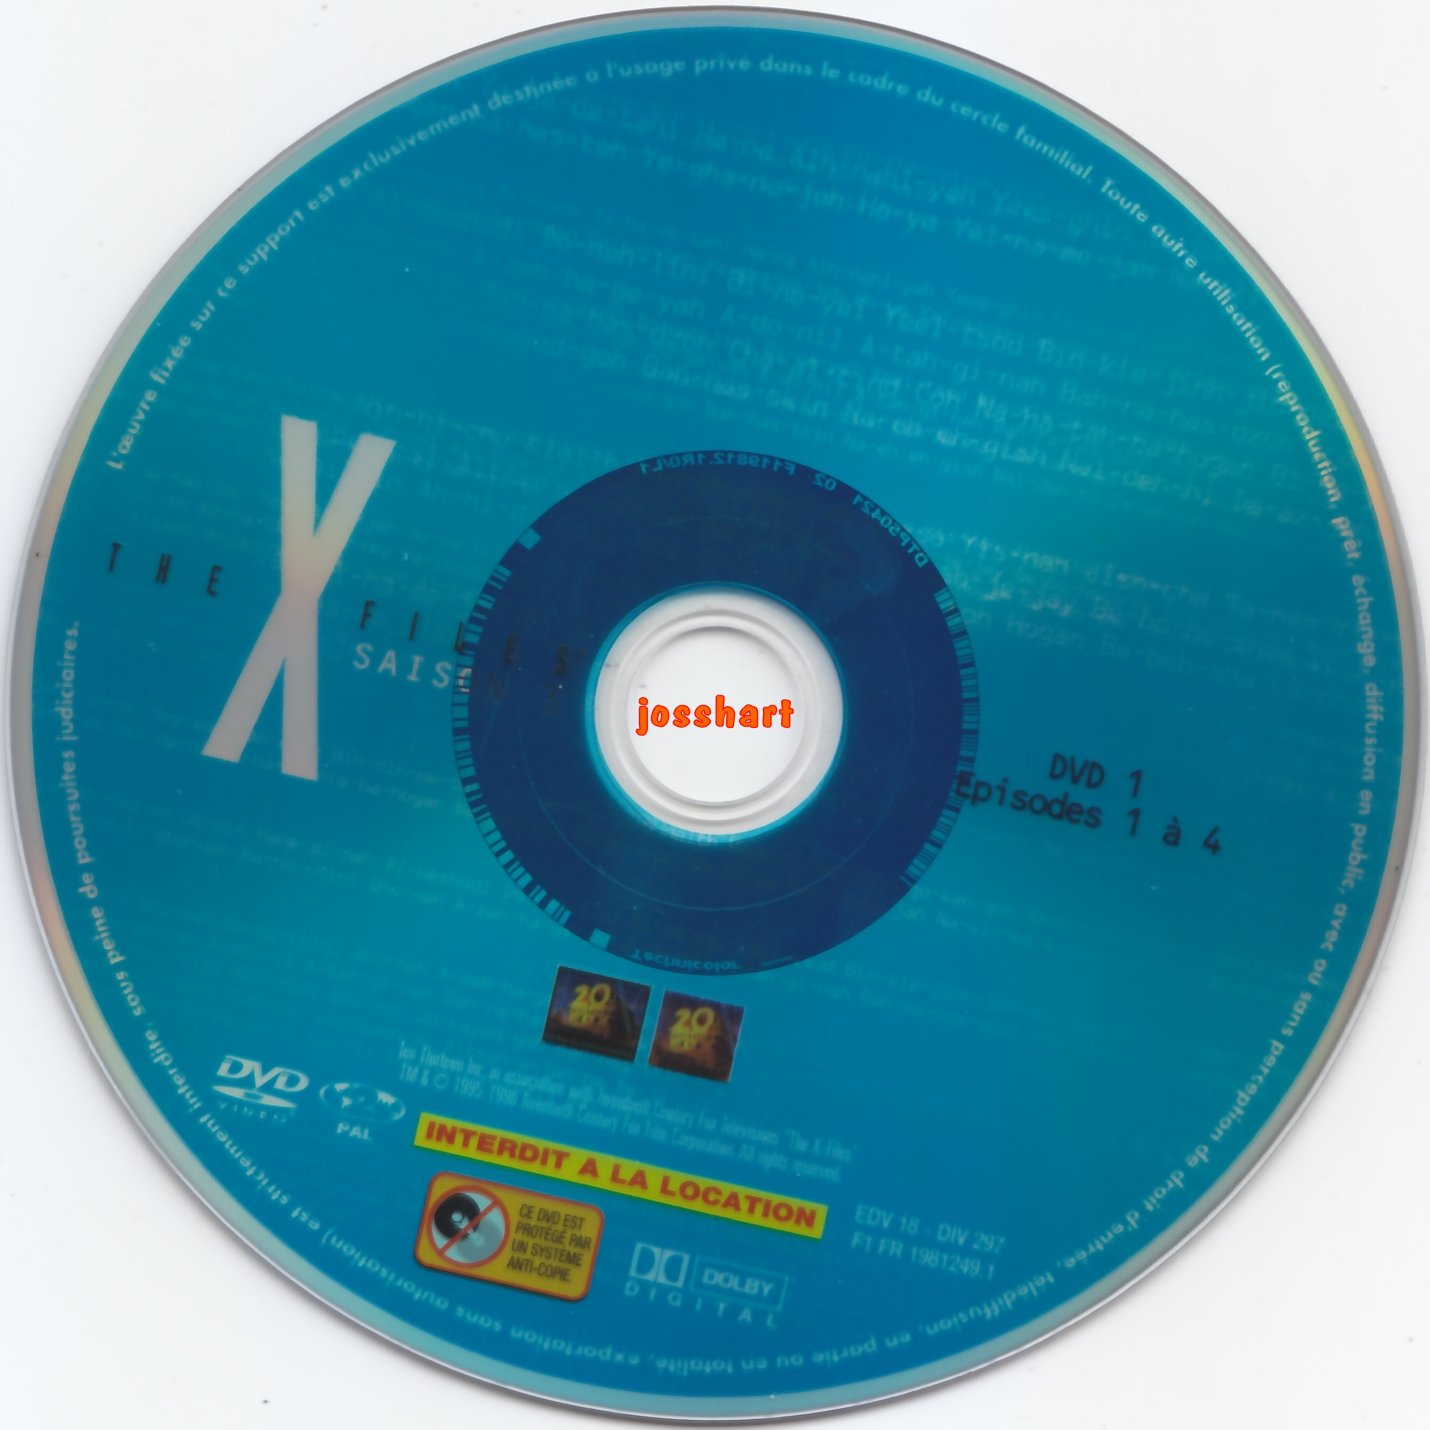 The X Files Saison 3 DVD 1 v2